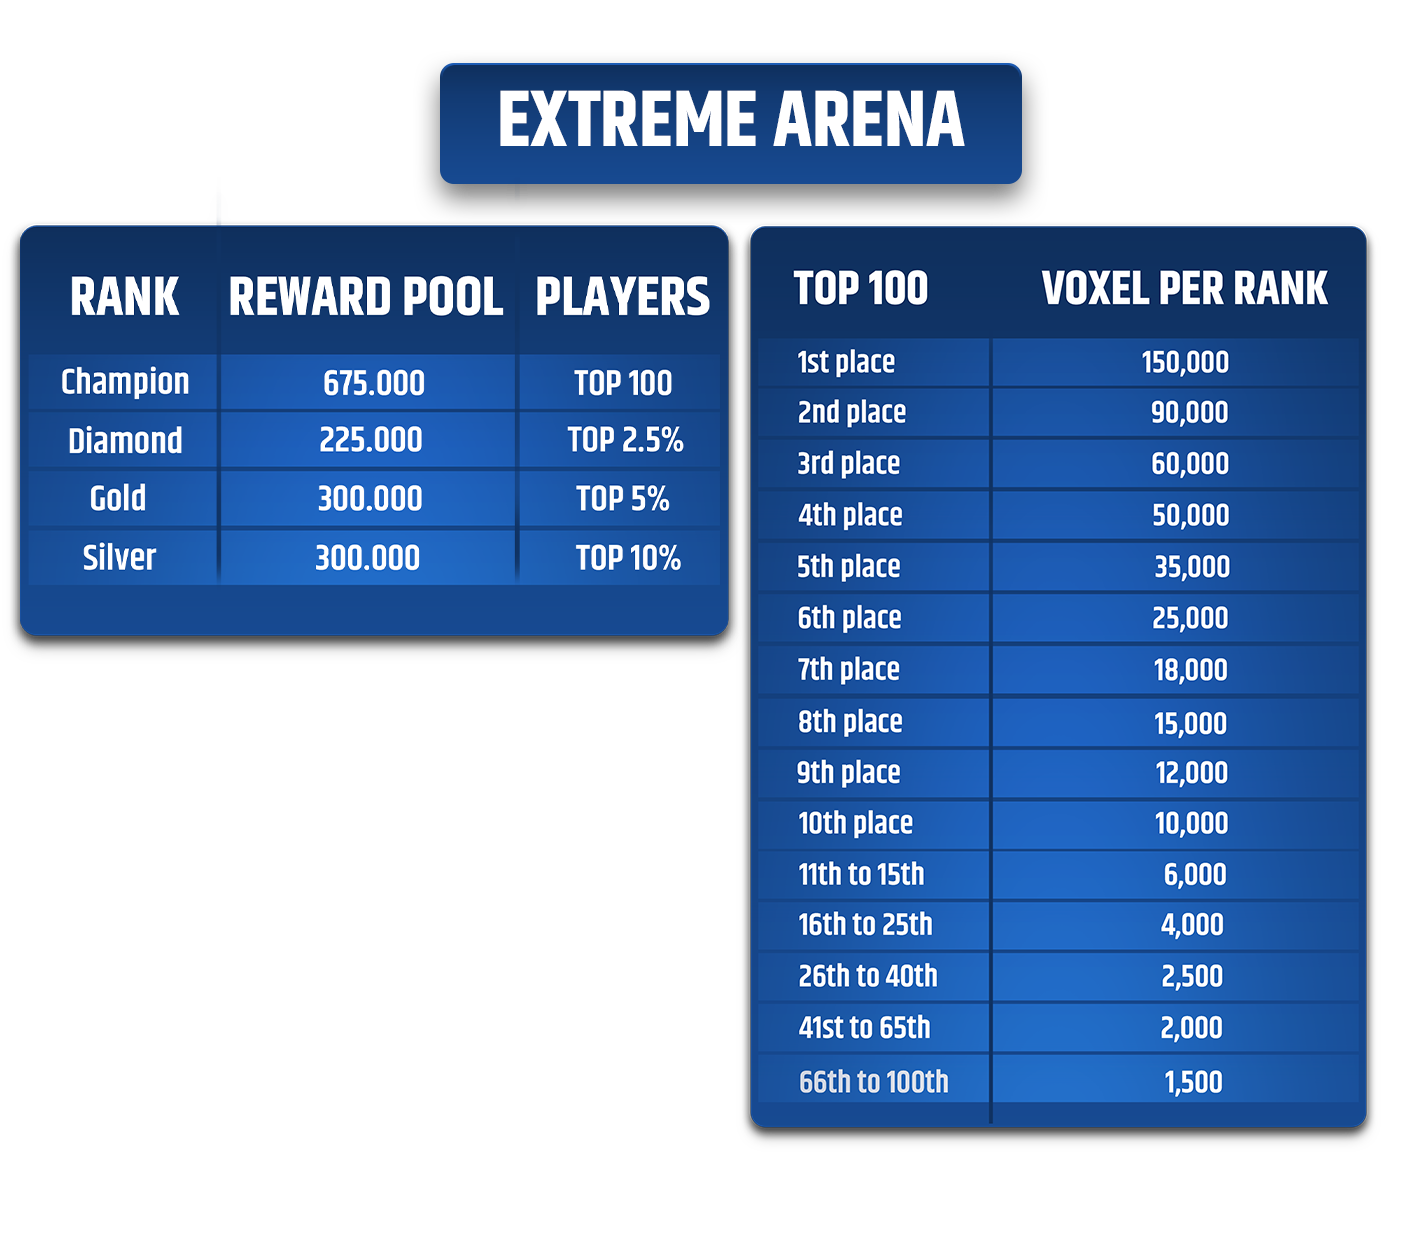 Recompensas Extreme Arena VOXEL